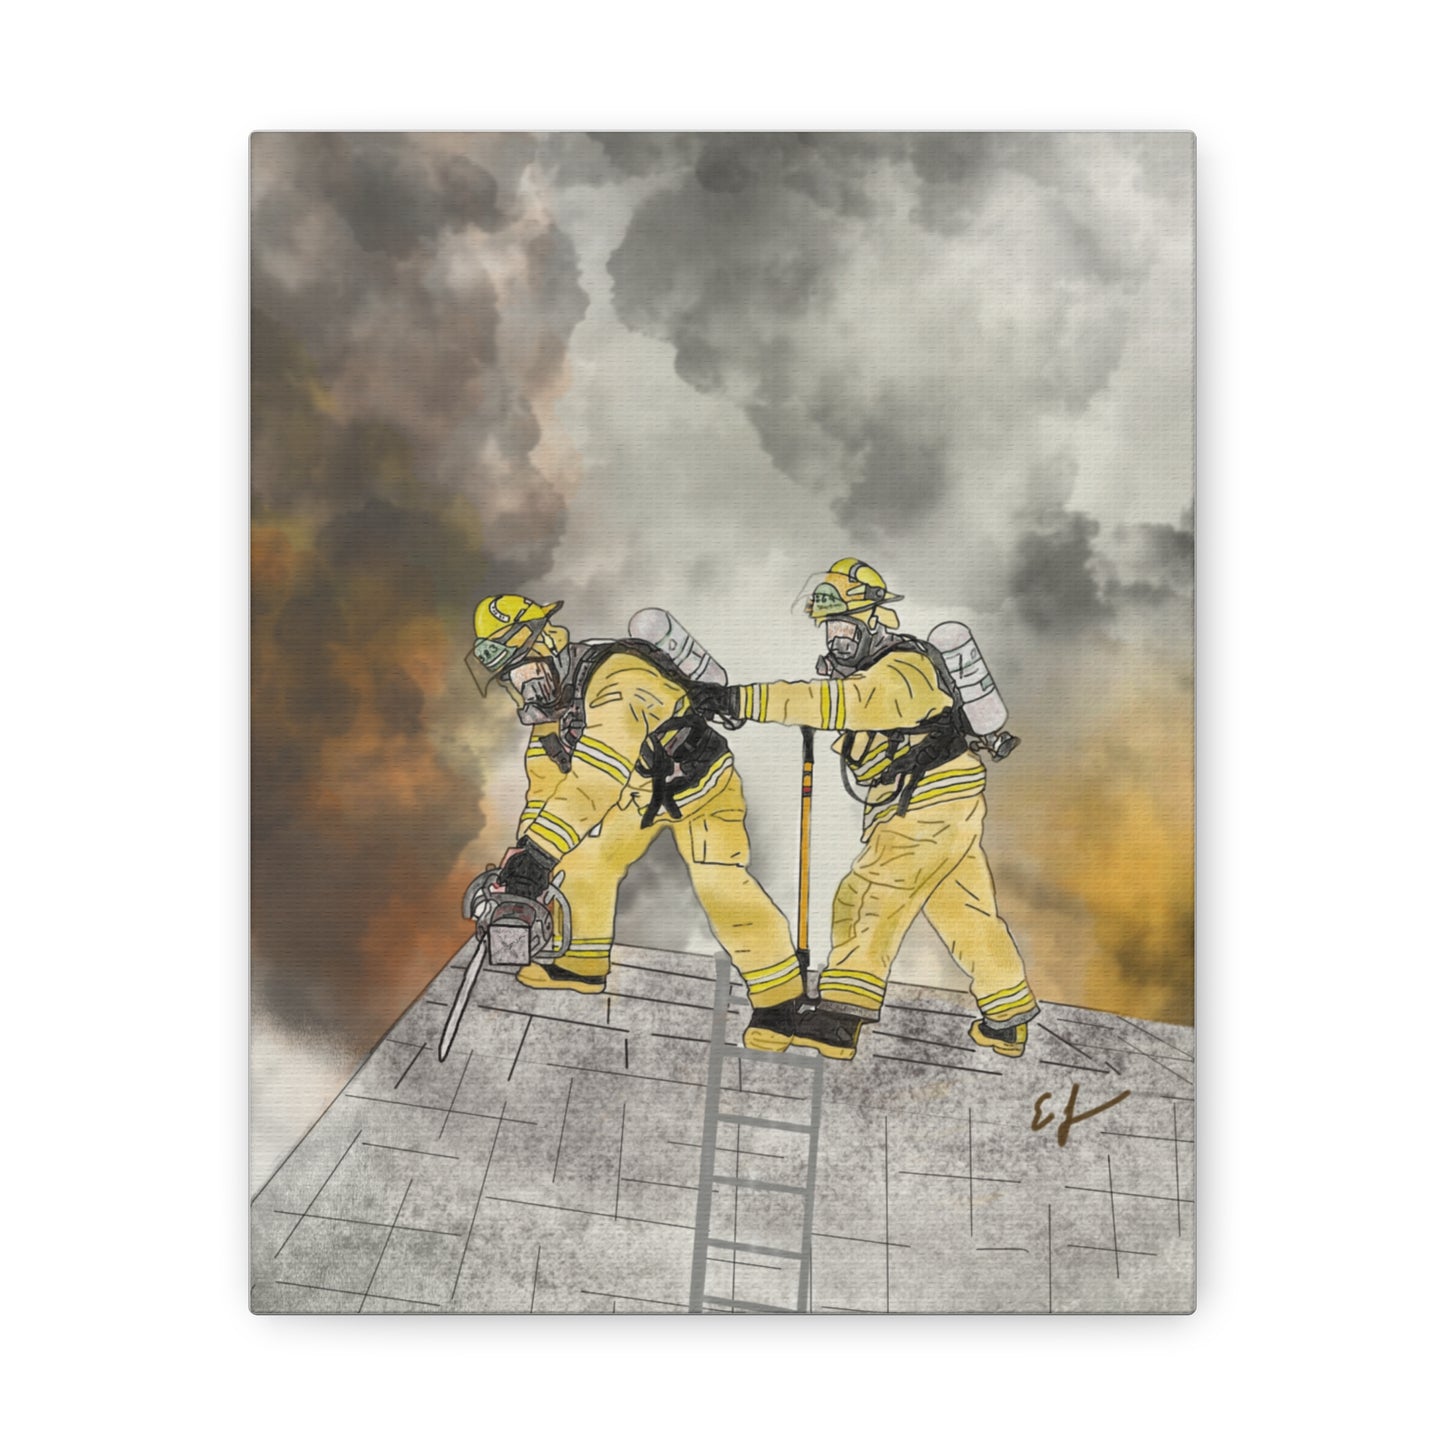 Firechick Designs Firefighter "Vent Crew" Canvas Gallery Wraps Firefighters Art Home Decor Wall Art Fireman Gift  Firemen Gifts